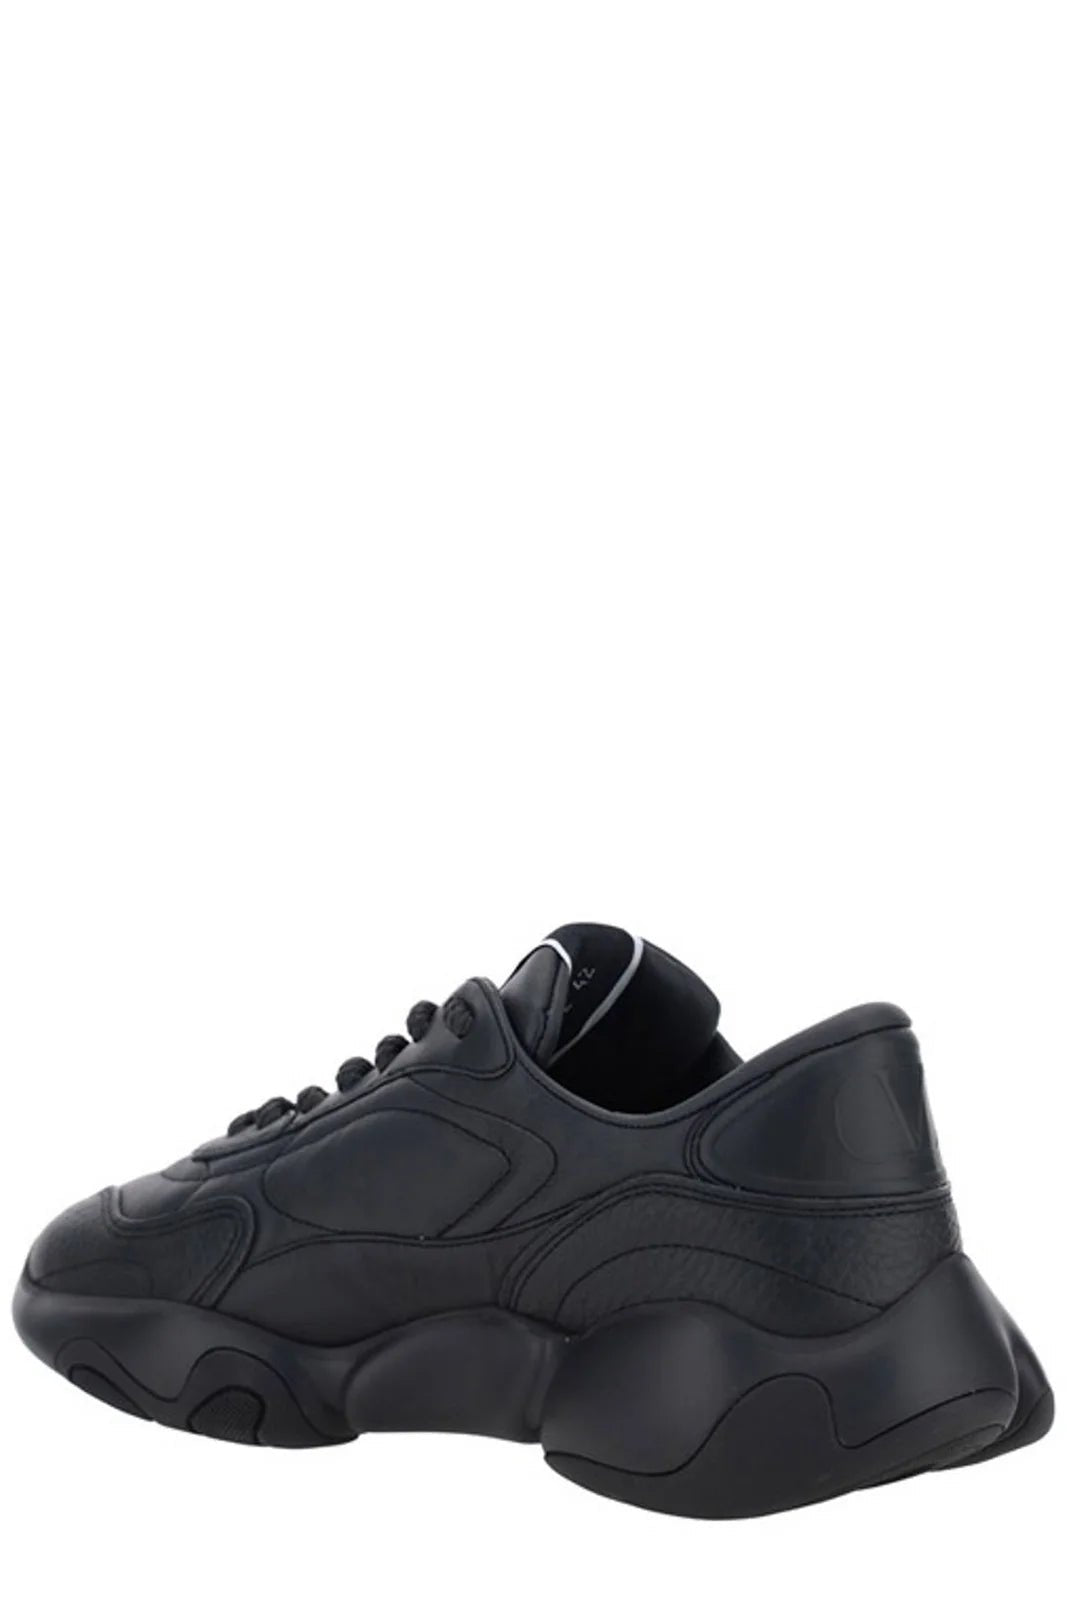 Valentino Black Calf Leather Garavani Sneakers - Fizigo